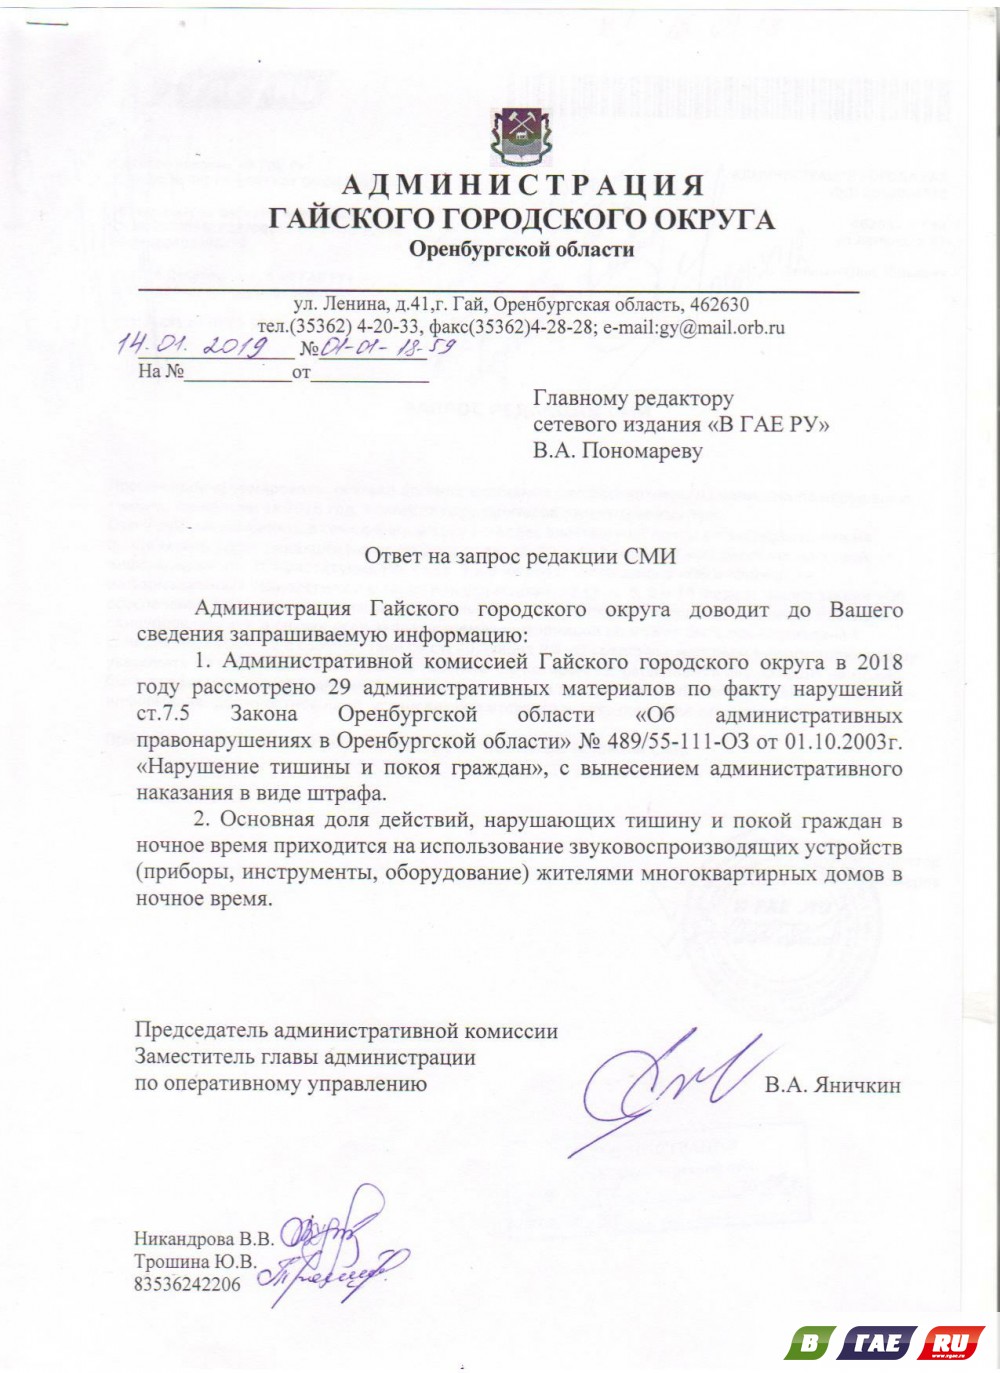 Документы для участия в программе переселения соотечественников 2020 украинцев